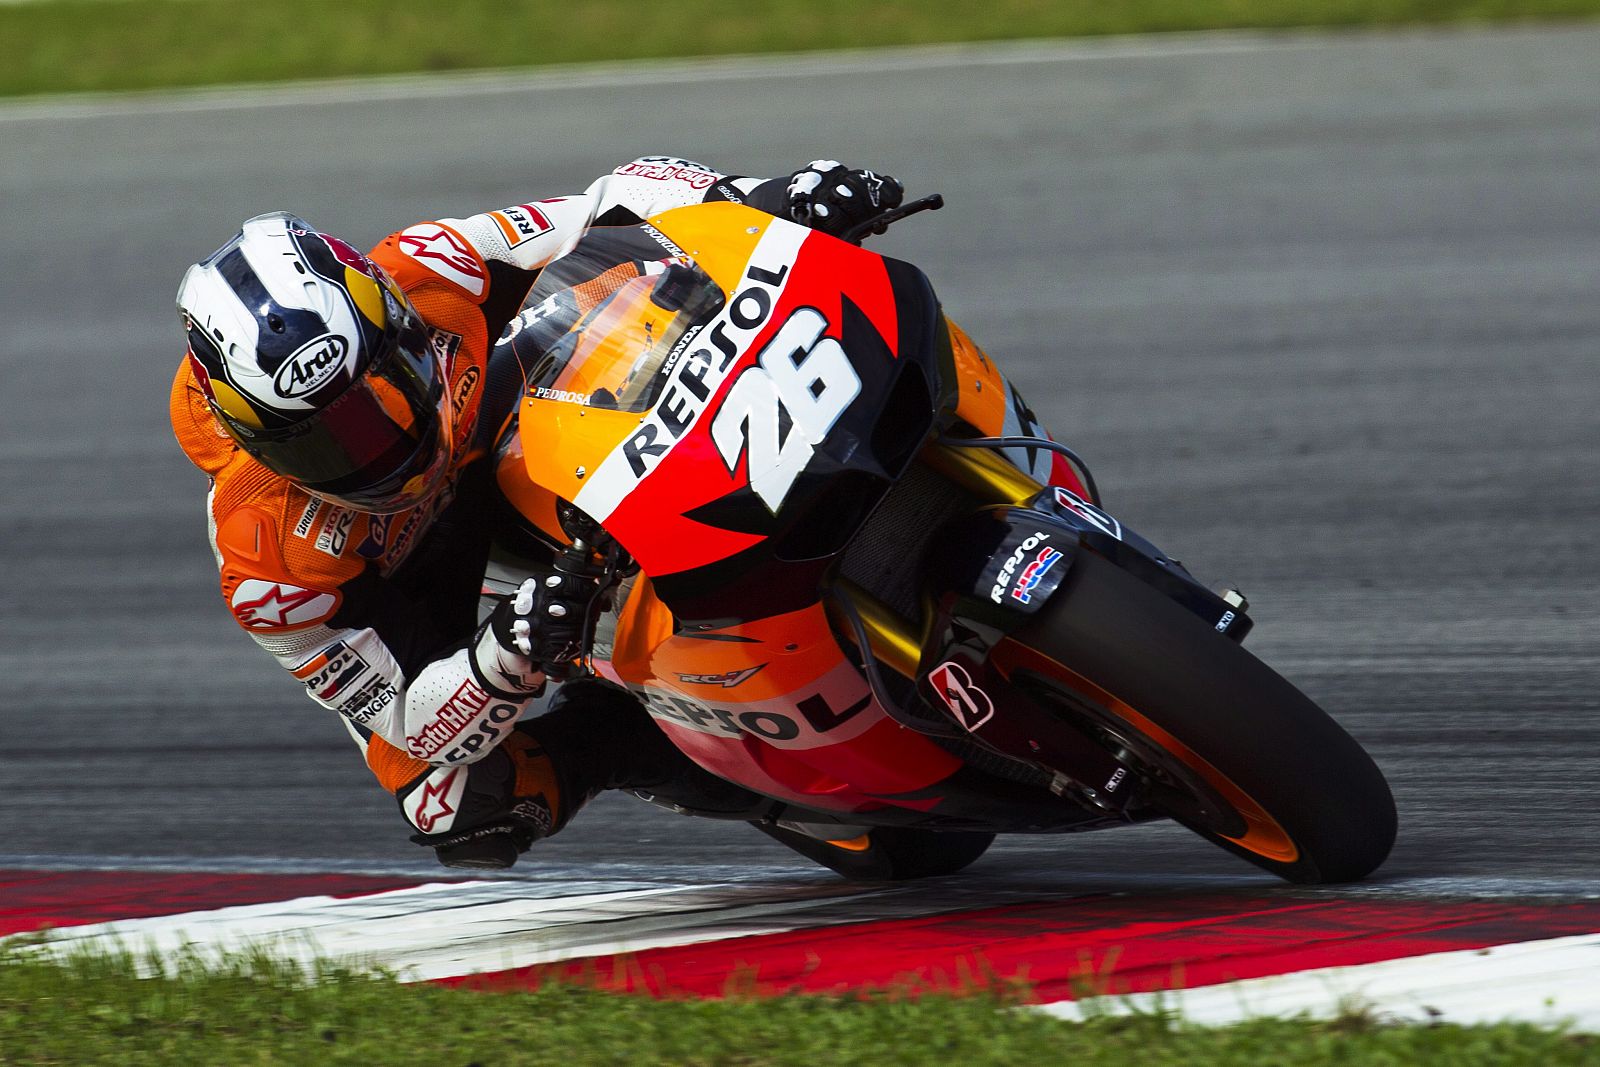 El piloto español de MotoGP Dani Pedrosa, de Repsol Honda, prueba su moto durante los entrenamientos de pretemporada en el circuito de Sepang en Kuala Lumpur.